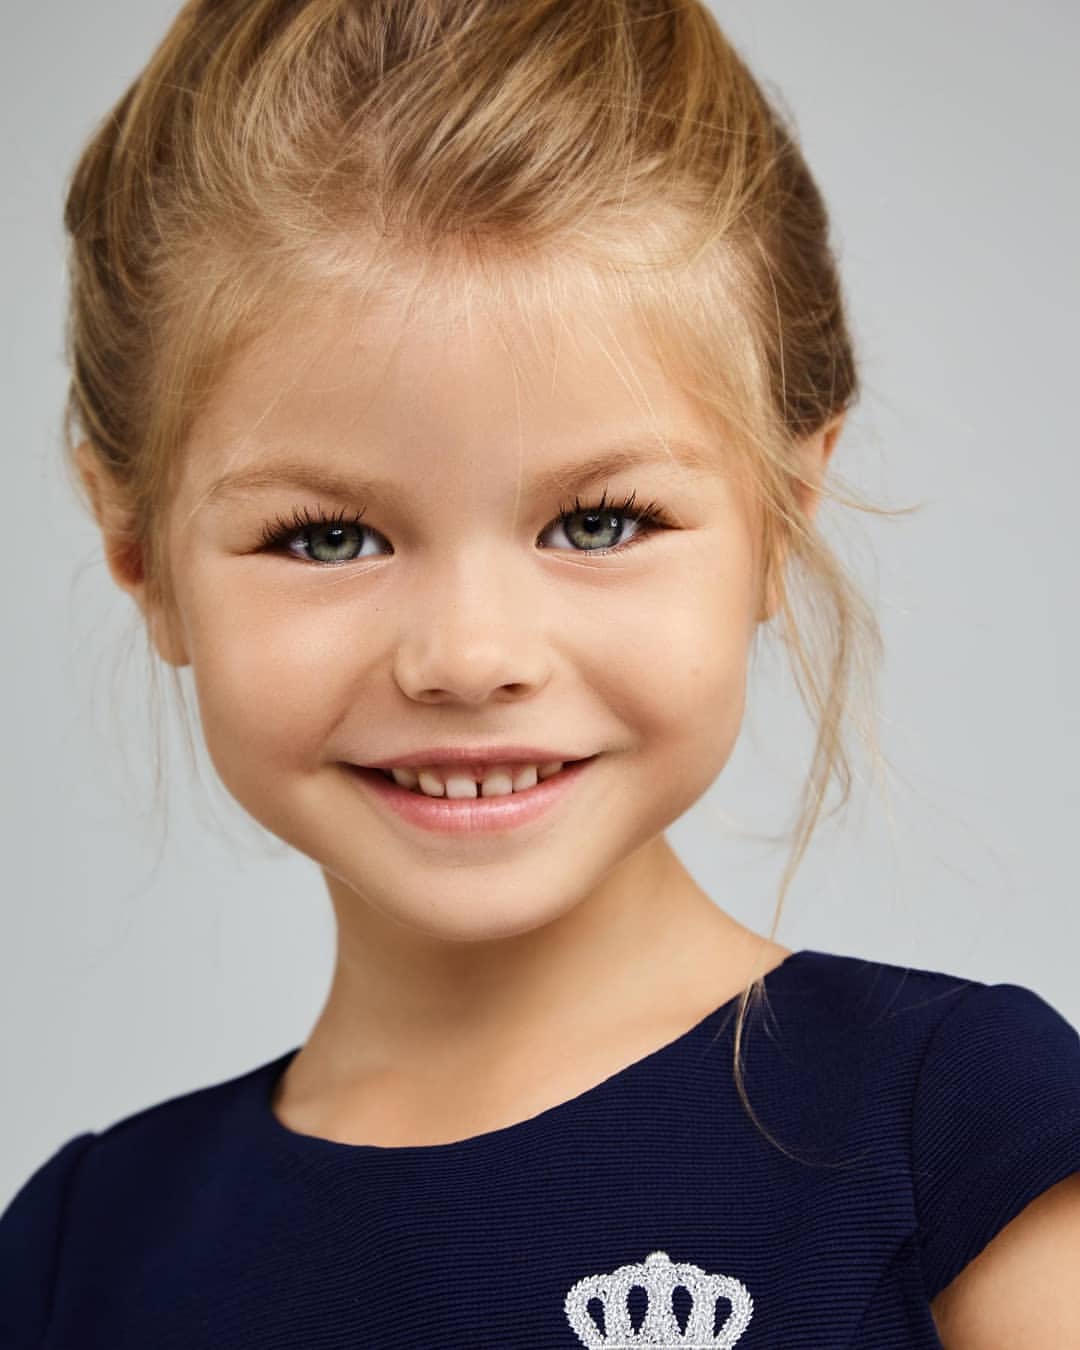 یک کودک-مدل بسیار زیبای روسی که بسیاری او را «زیباترین دختر جهان» لقب داده اند بیش از 22.000 فالوور در اینستاگرام دارد. آلینا یاکوپووا (Alina Yakupova)، 6 ساله و اهل مسکو از سن 4 سالگی وارد عرصه مدلینگ شده